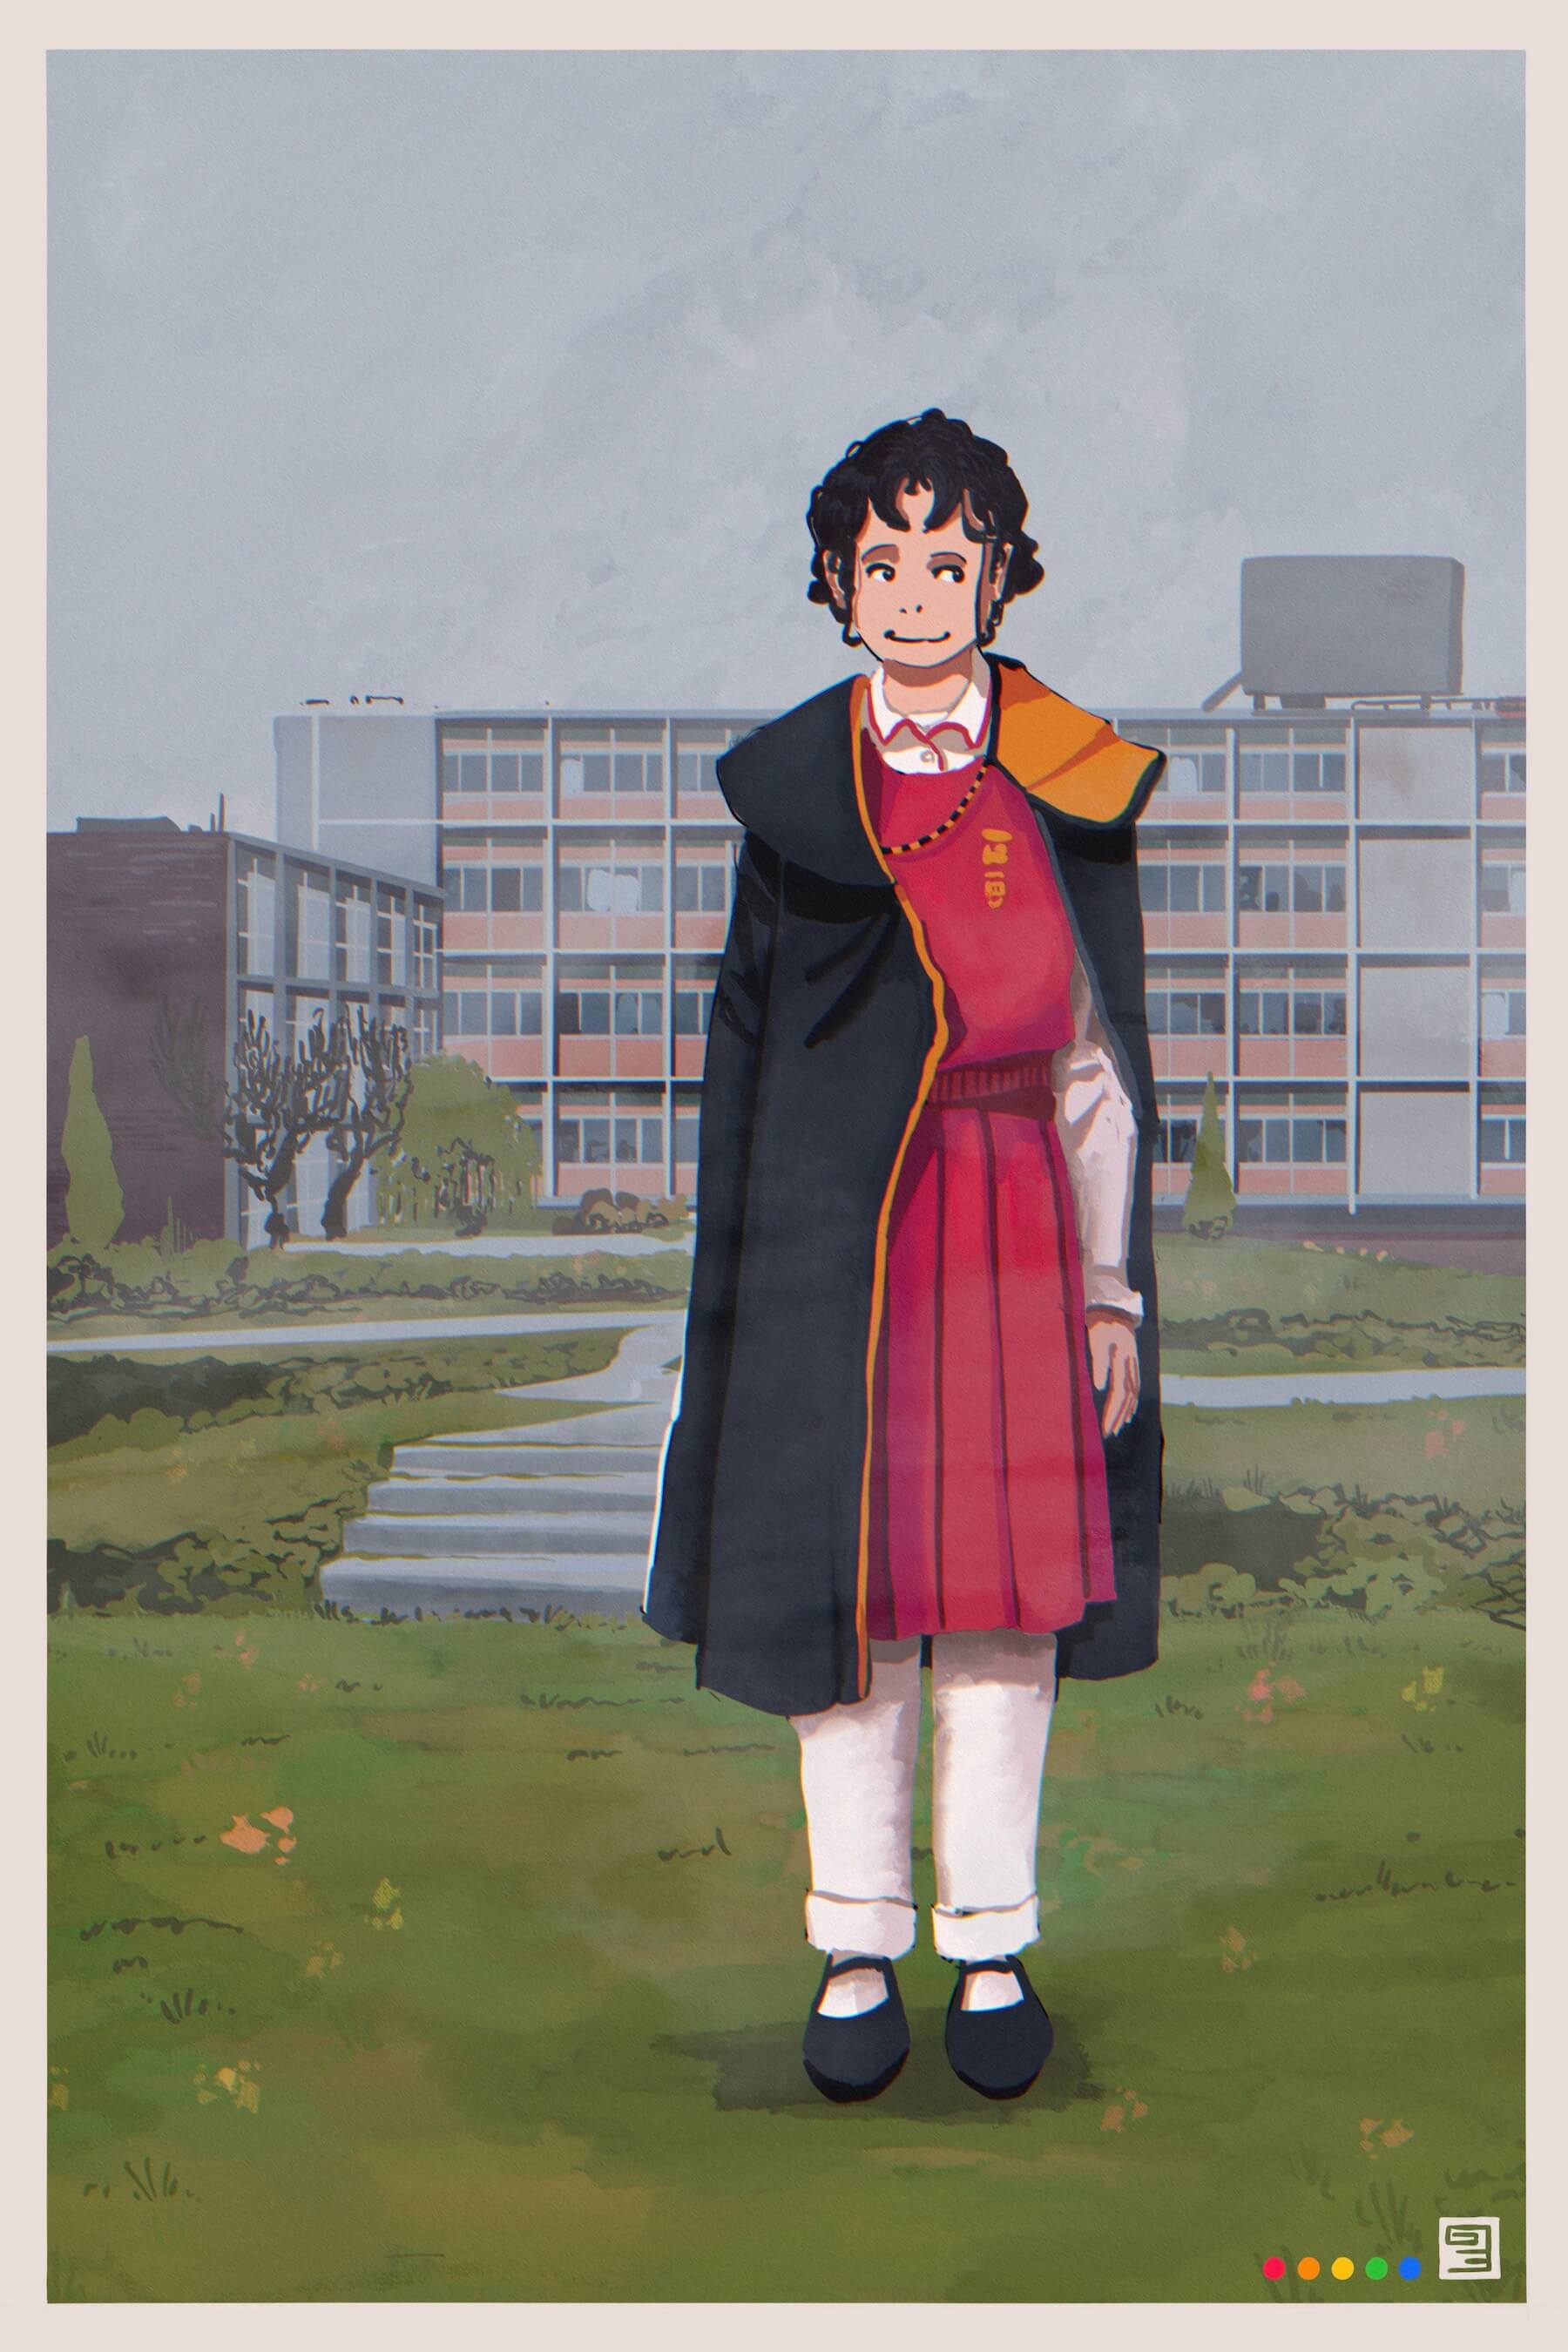 Image of Tzipora standing in front of school building